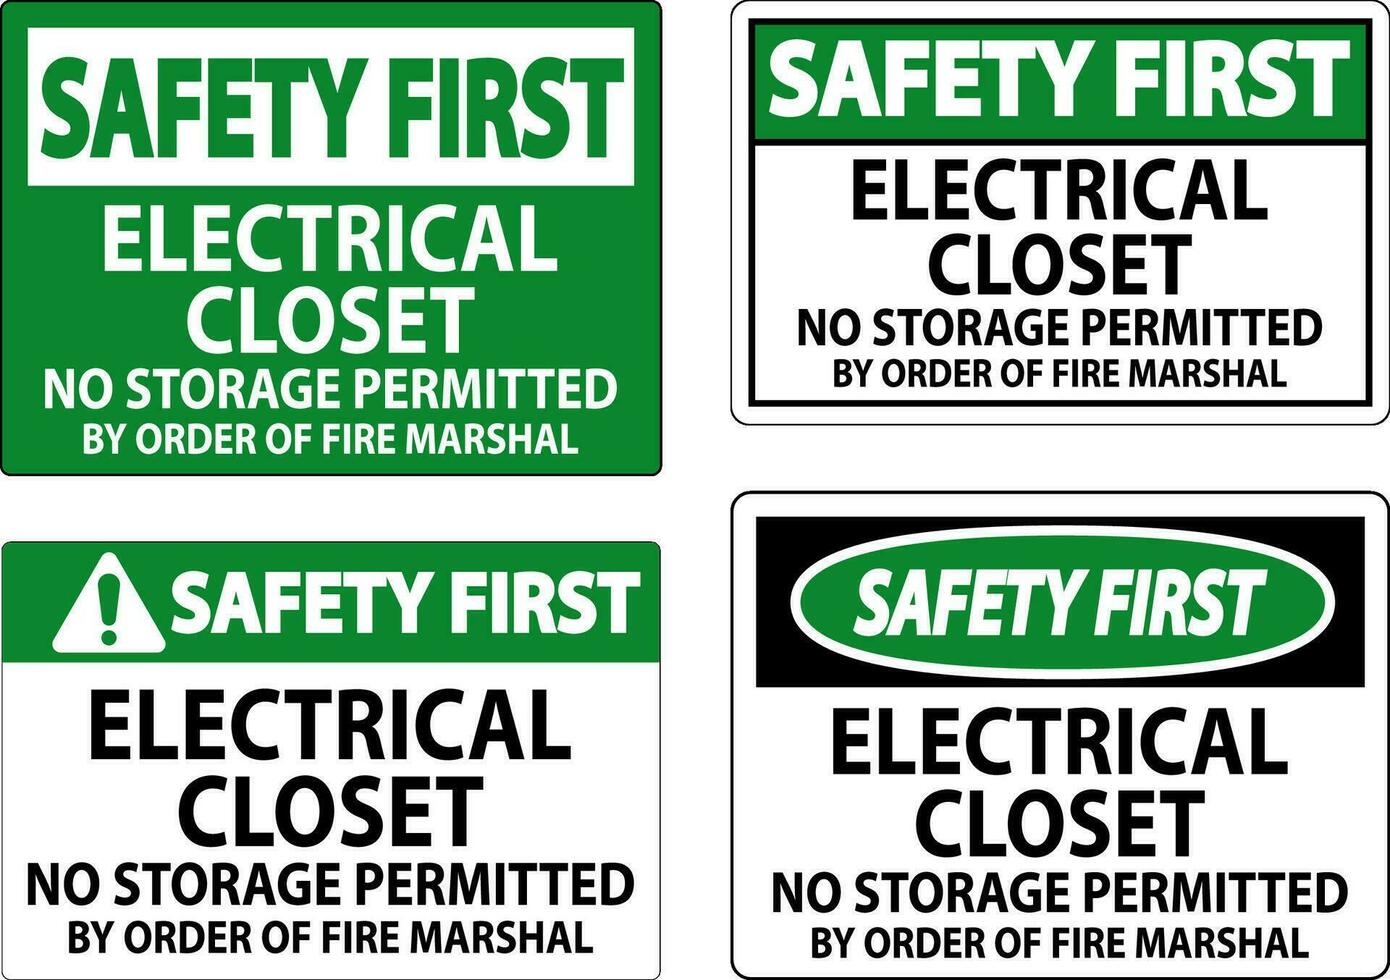 segurança primeiro placa elétrico armário de roupa - não armazenamento permitido de ordem do fogo marechal vetor